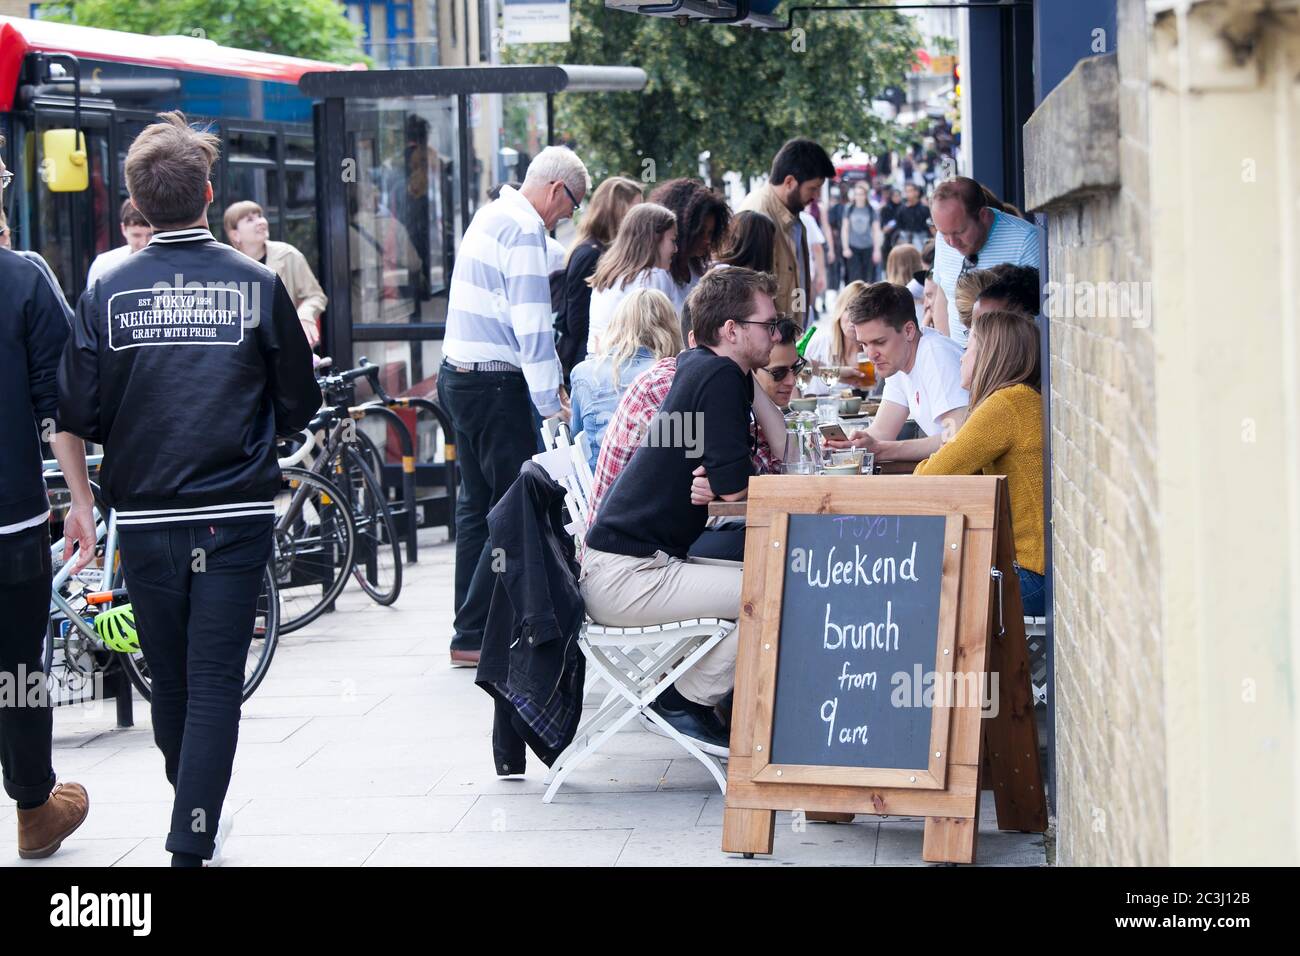 Londra, Regno Unito - 17 luglio 2019, la gente è seduta in un caffè di strada sulla trafficata Brick Lane. Un annuncio è scritto su una lavagna nera - brunch da nove Foto Stock